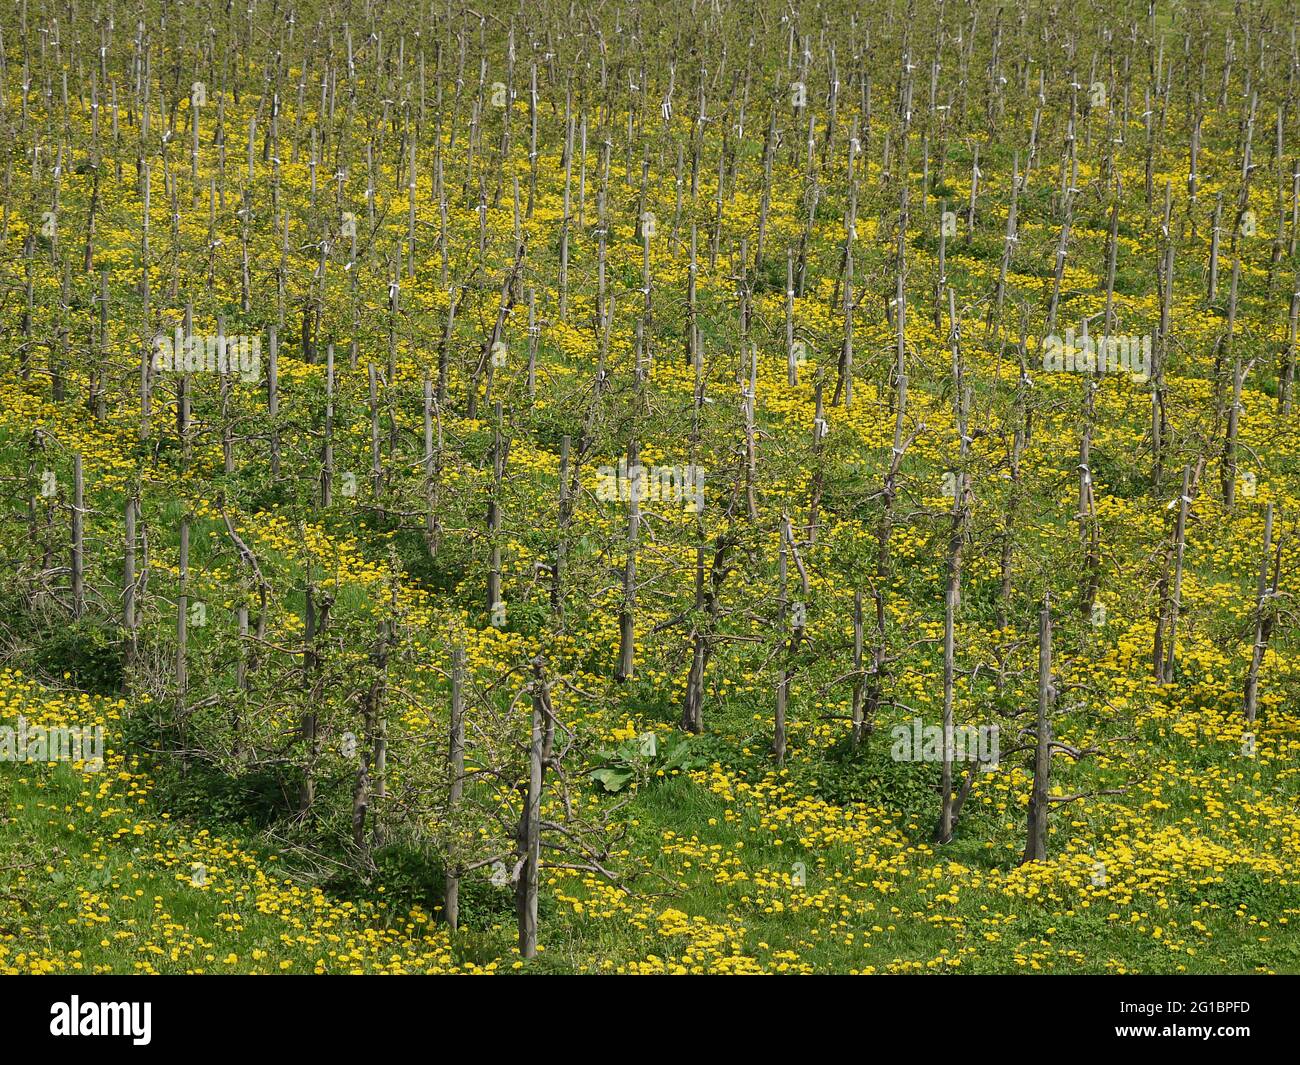 Piantagione di alberi di mele, alberi in file, sul terreno un prato con dandelioni fioriti, vista diagonalmente dall'alto Foto Stock